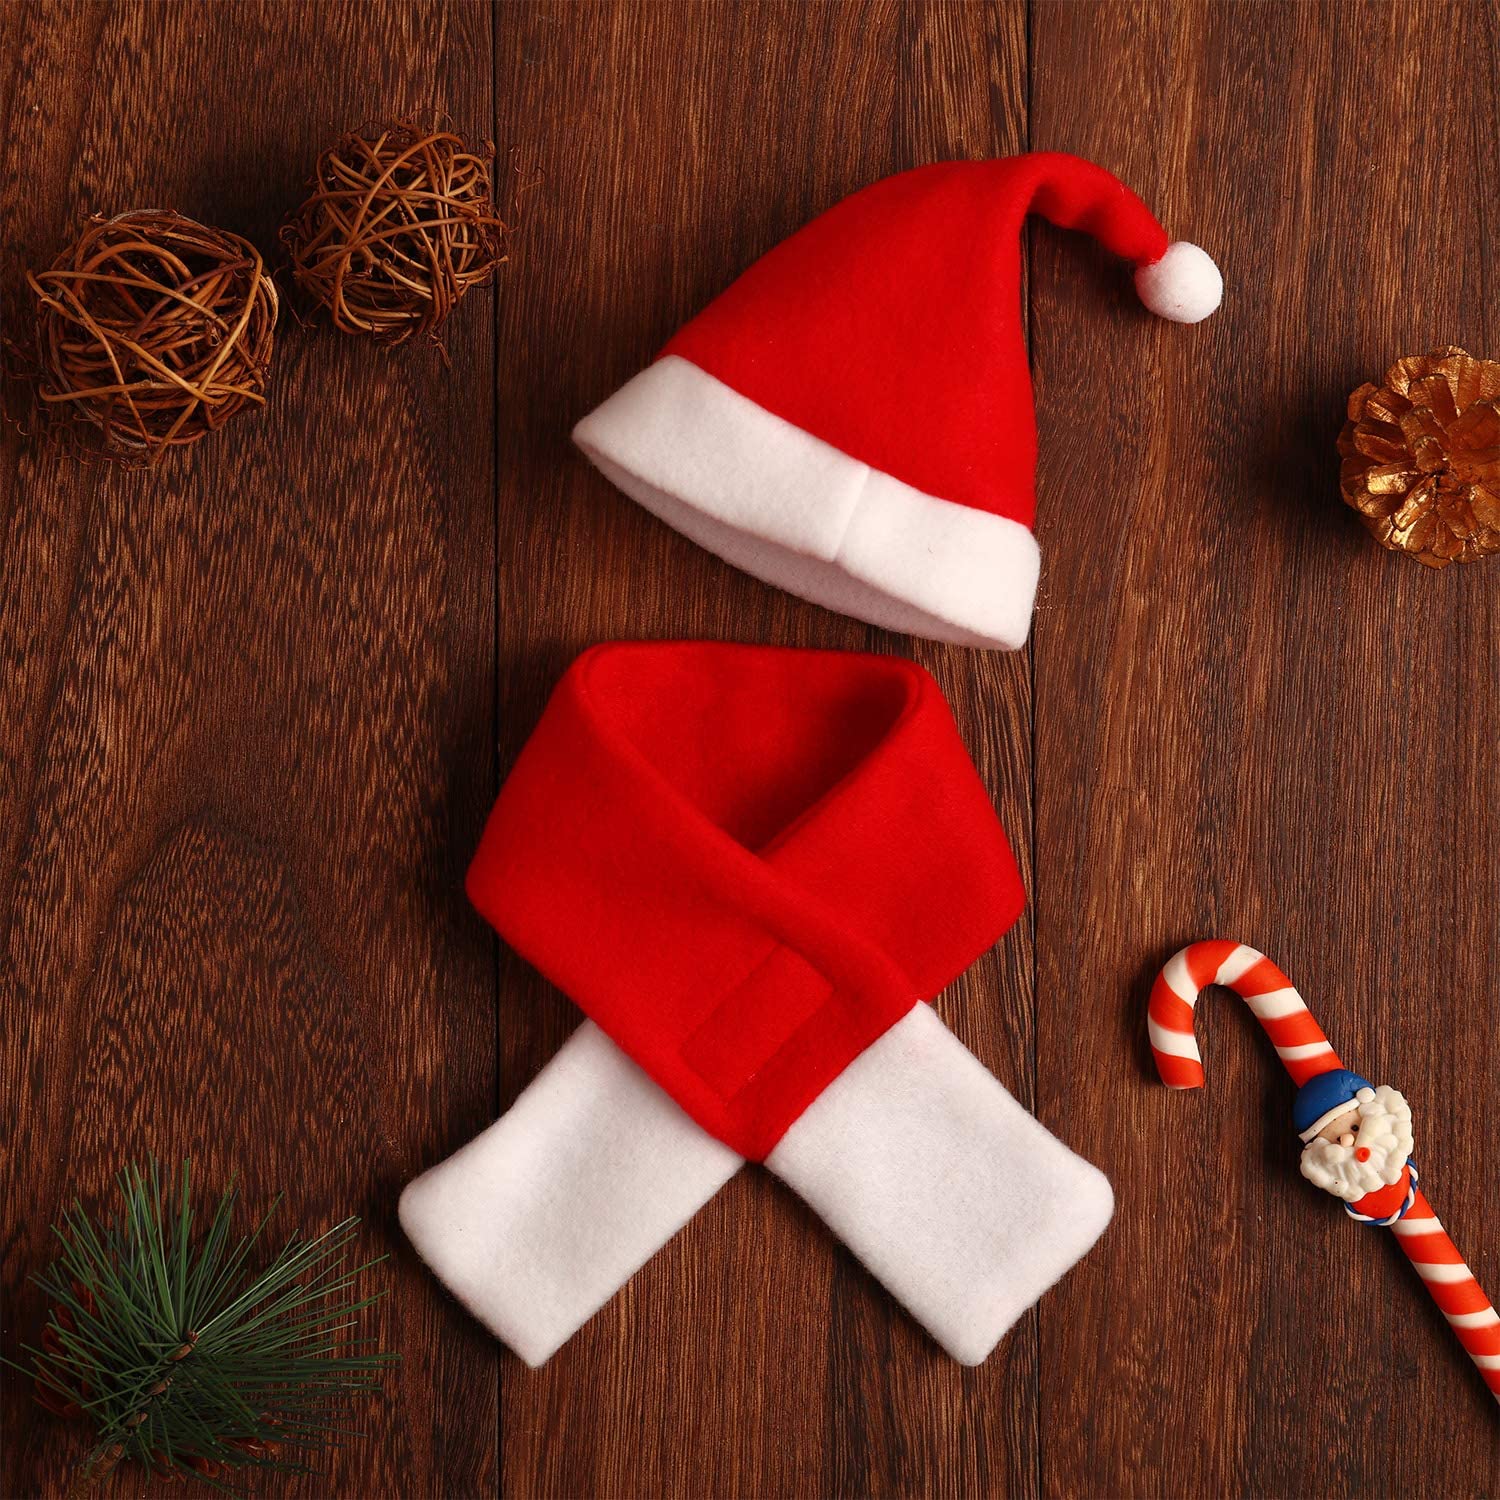  Syhood 4 Piezas de Gato Sombrero de Navidad con Silenciador Cachorro Perro Sombrero de Santa Accesorios para Cabeza Trajes de Disfraces de Navidad para Mascotas Perro Gato Conejo, Rojo 